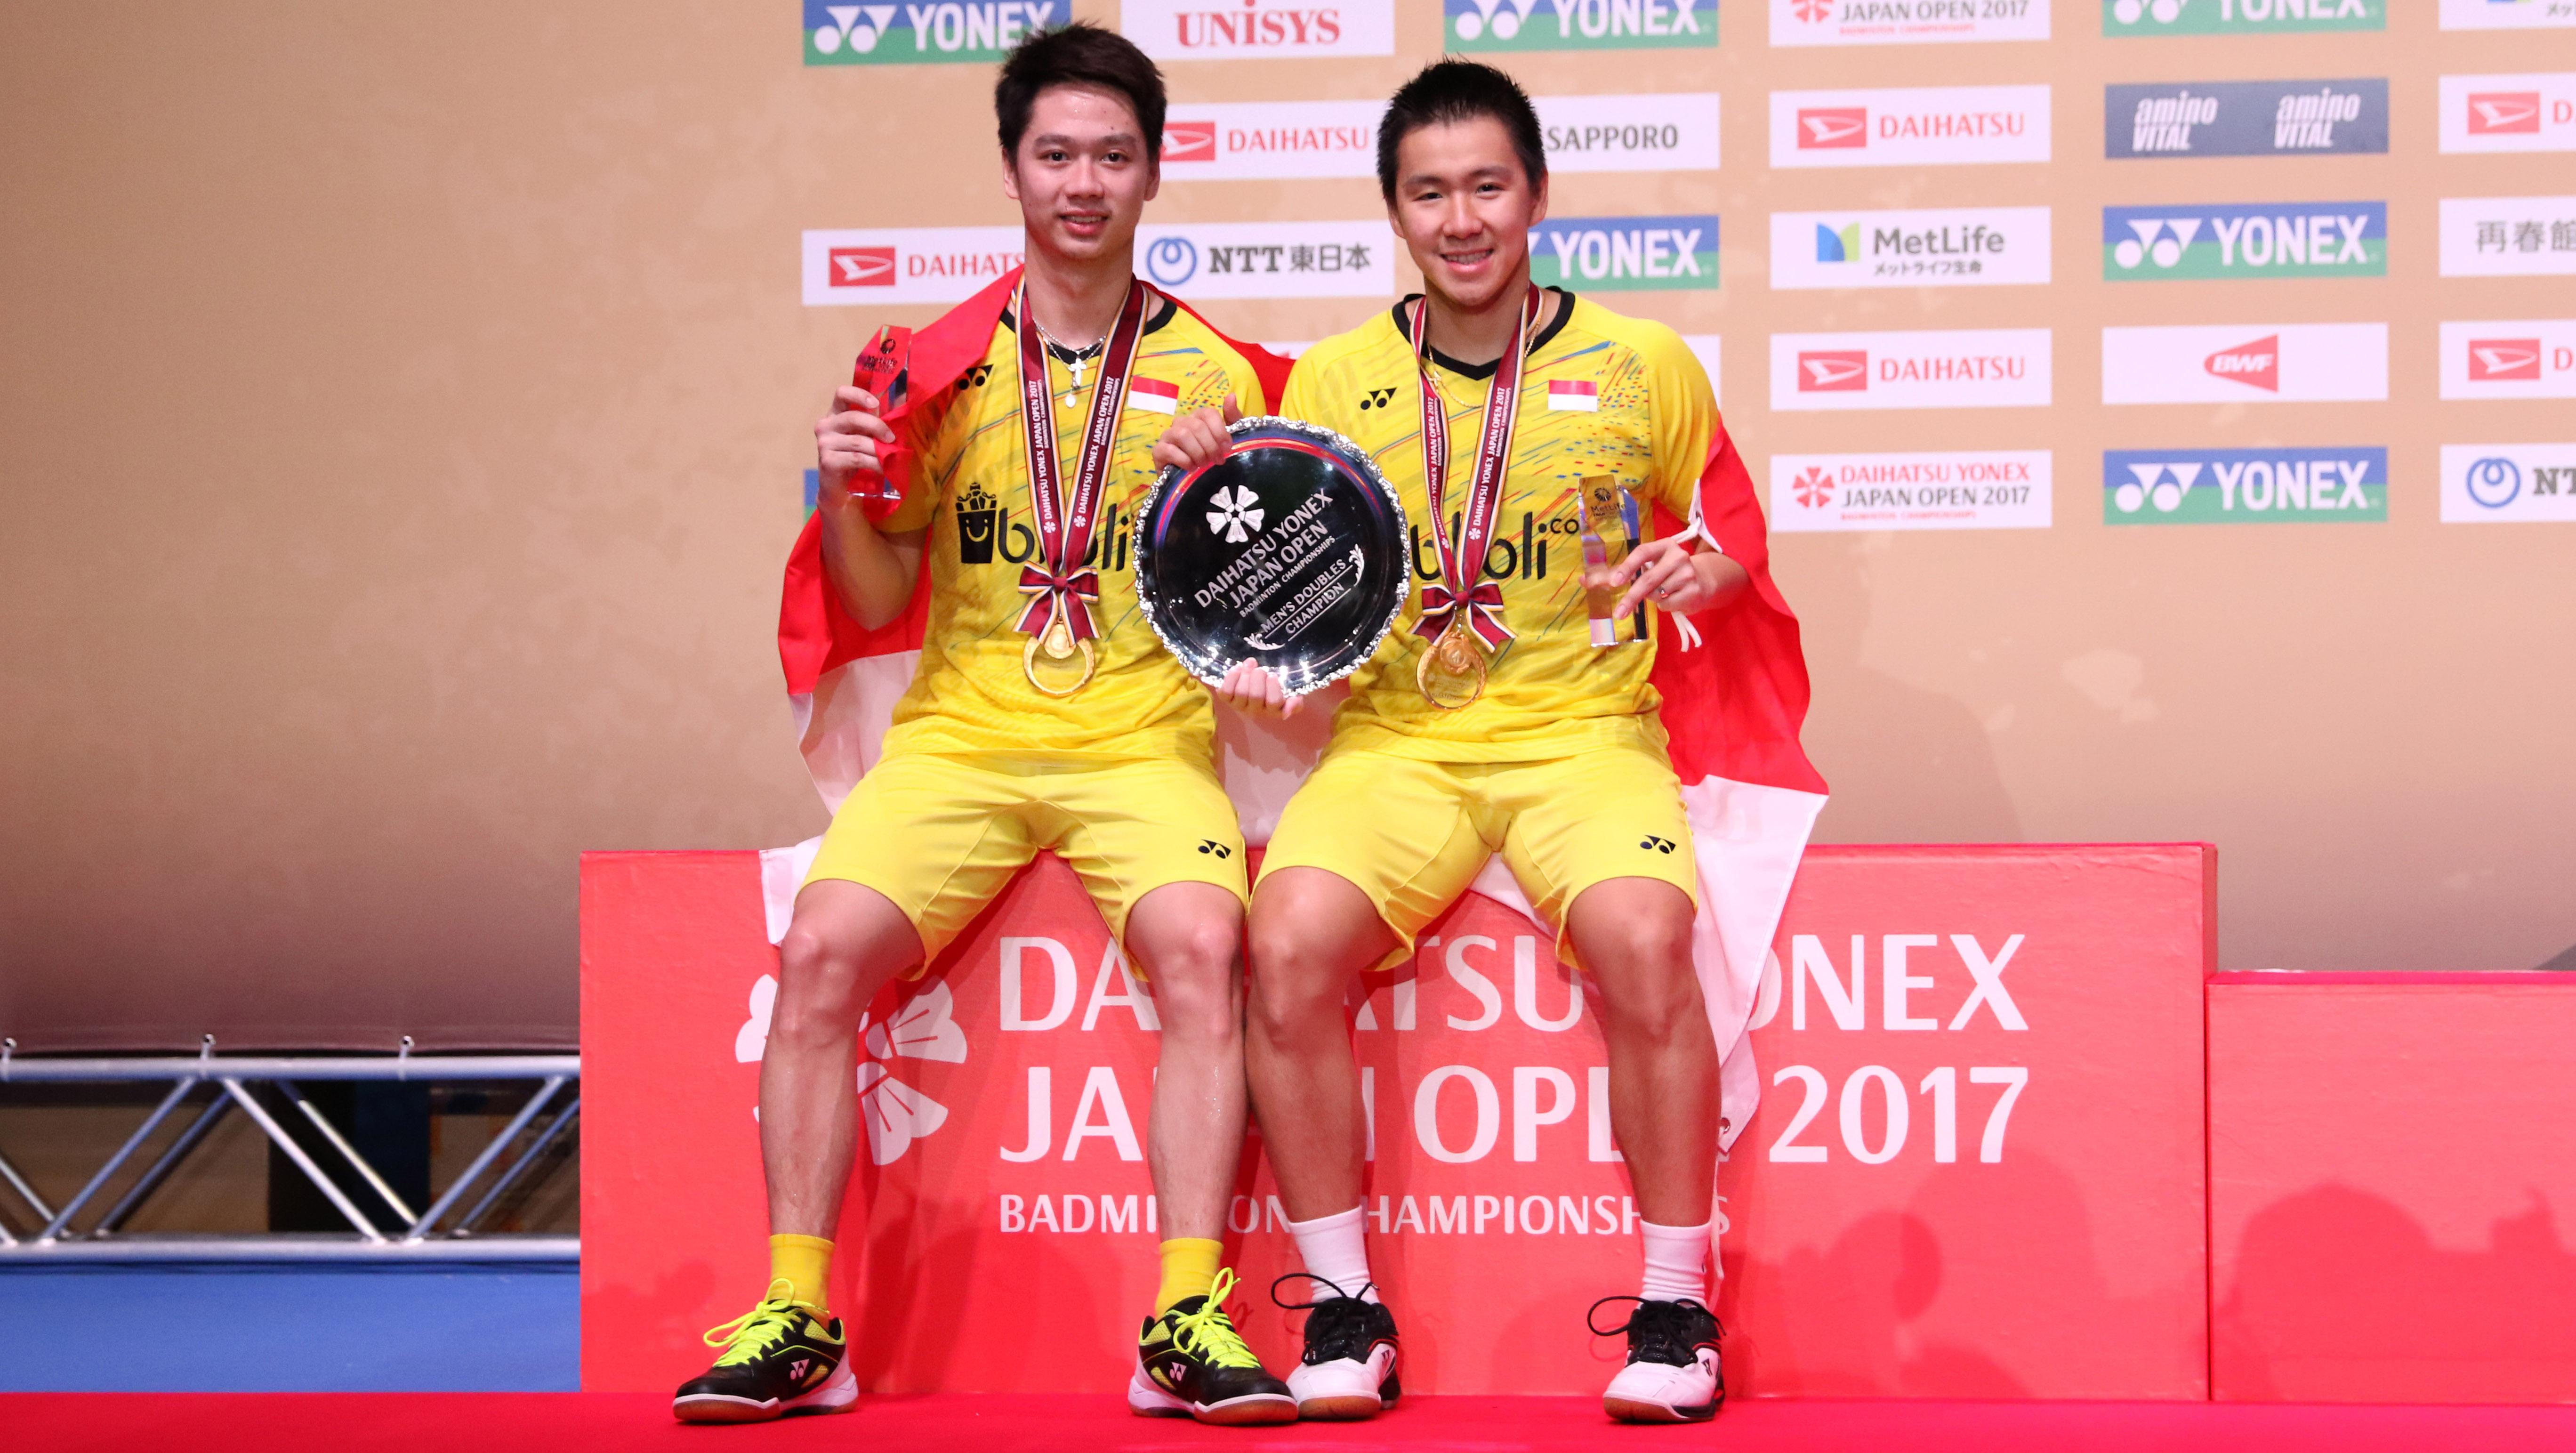 Kevin Sanjaya Sukamuljo/Marcus Fernaldi Gideon berhasil menjadi juara di Japan Open Super Series 2017. - INDOSPORT